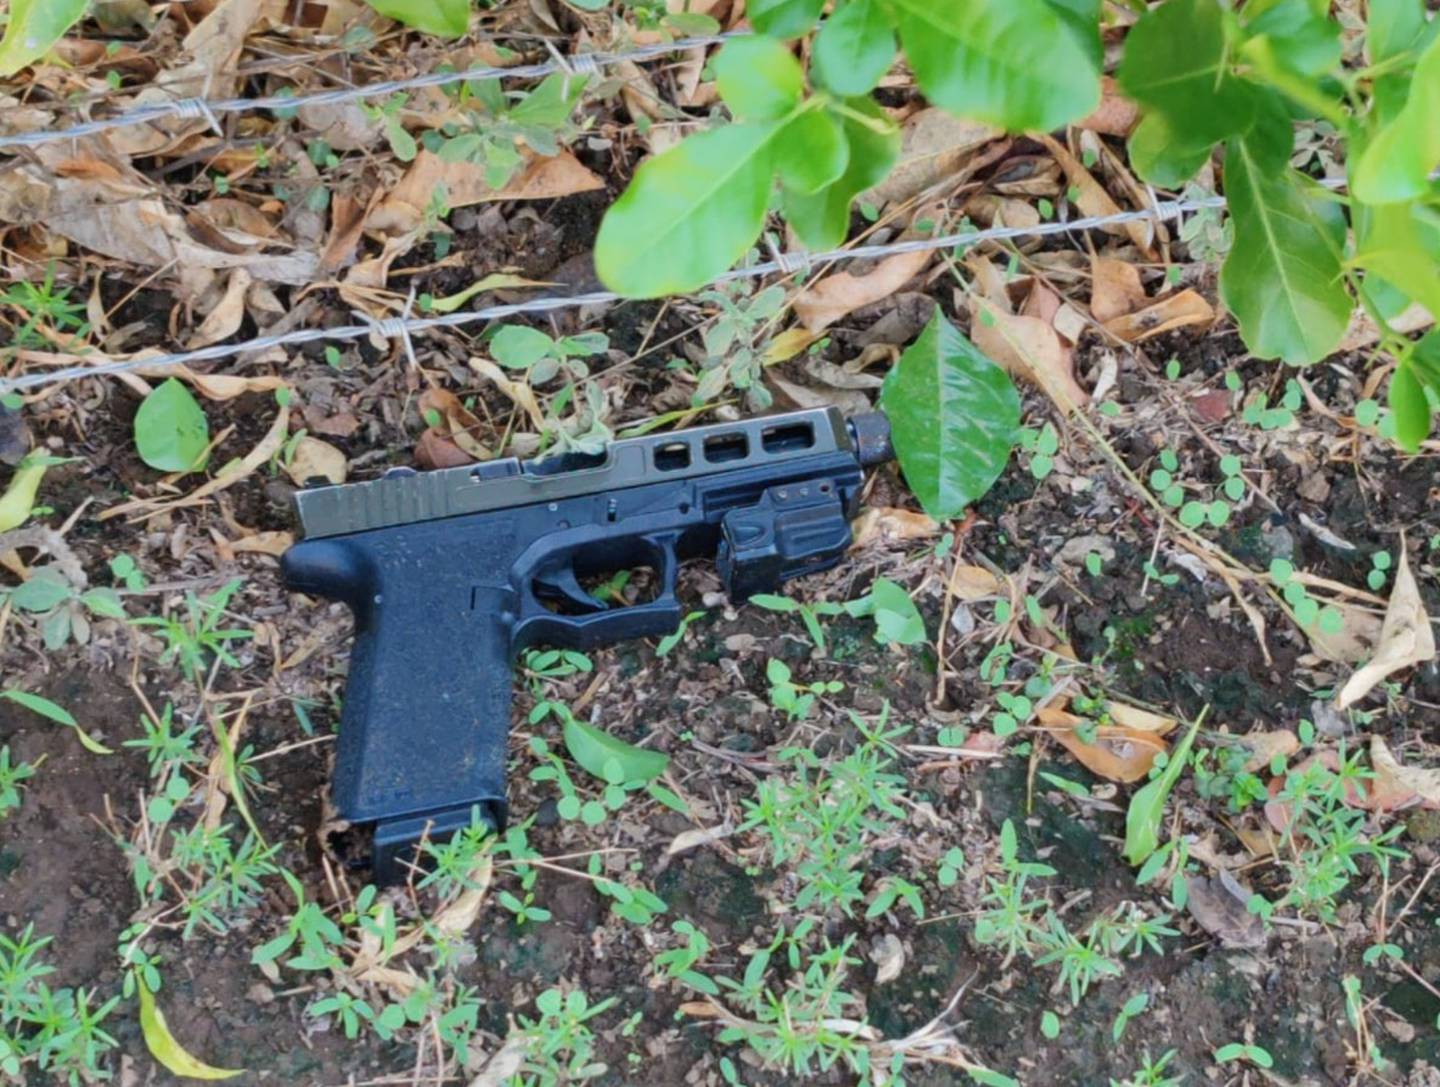 Esta pistola, que al parecer intentó usar contra la Policía  uno de los detenidos,  fue decomisada. Foto: MSP.